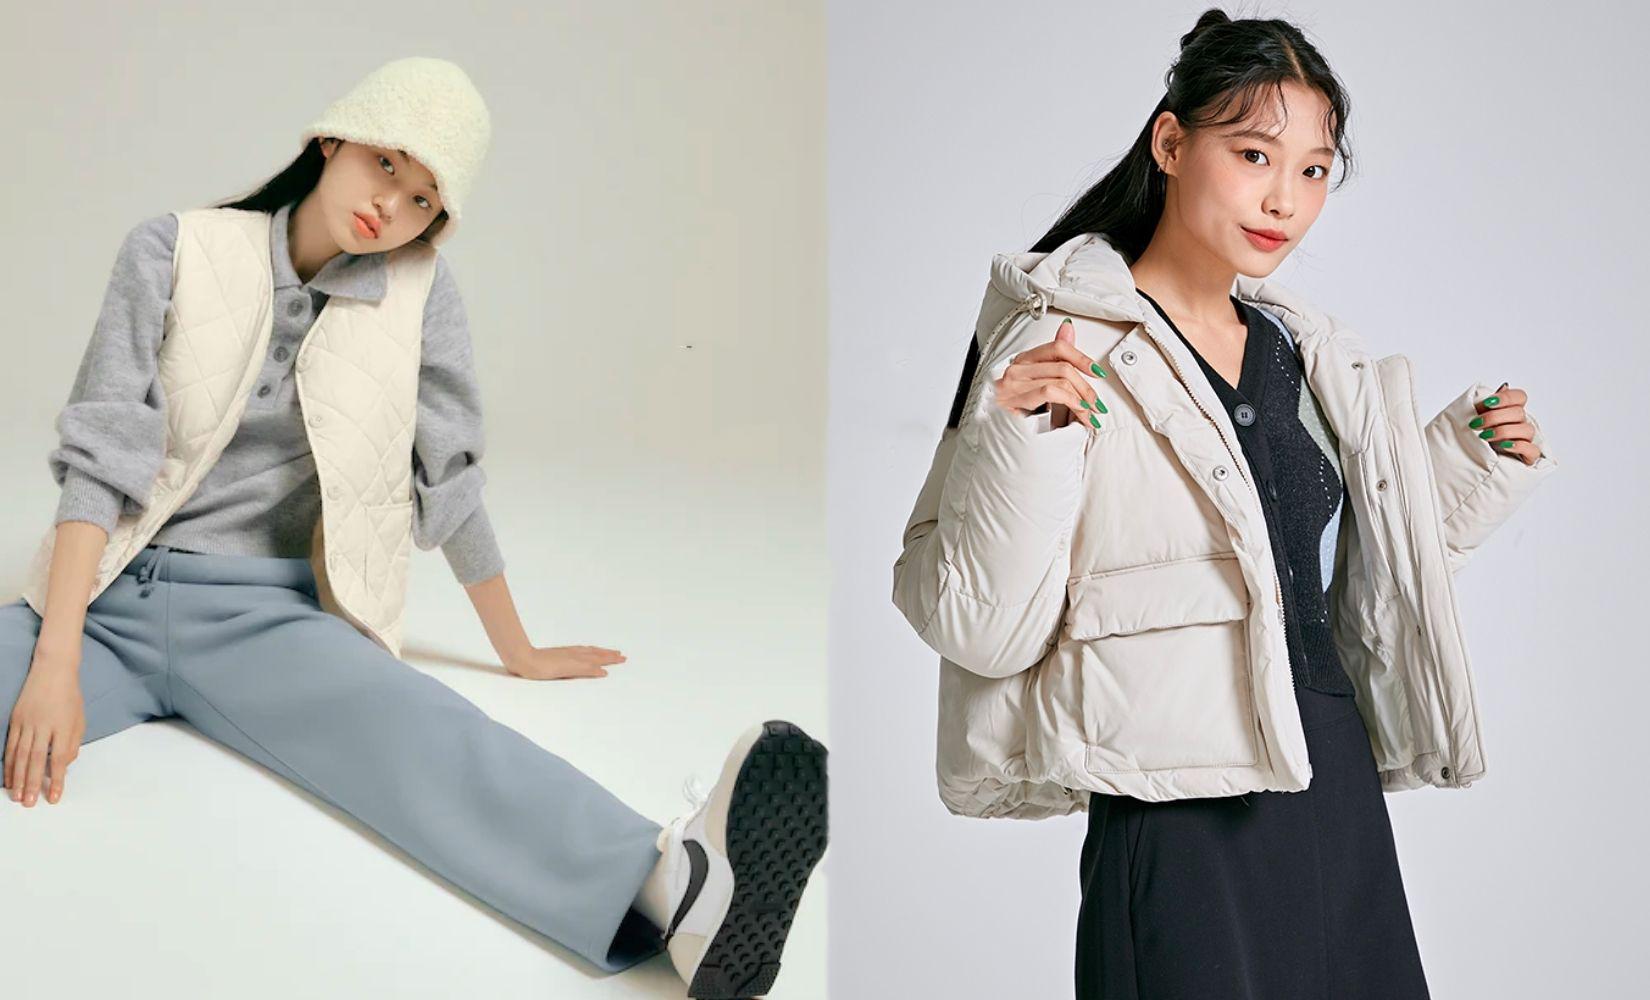 Creatrip: Korean Winter Fashion Trends In 2021 - Korea (Travel Guide)